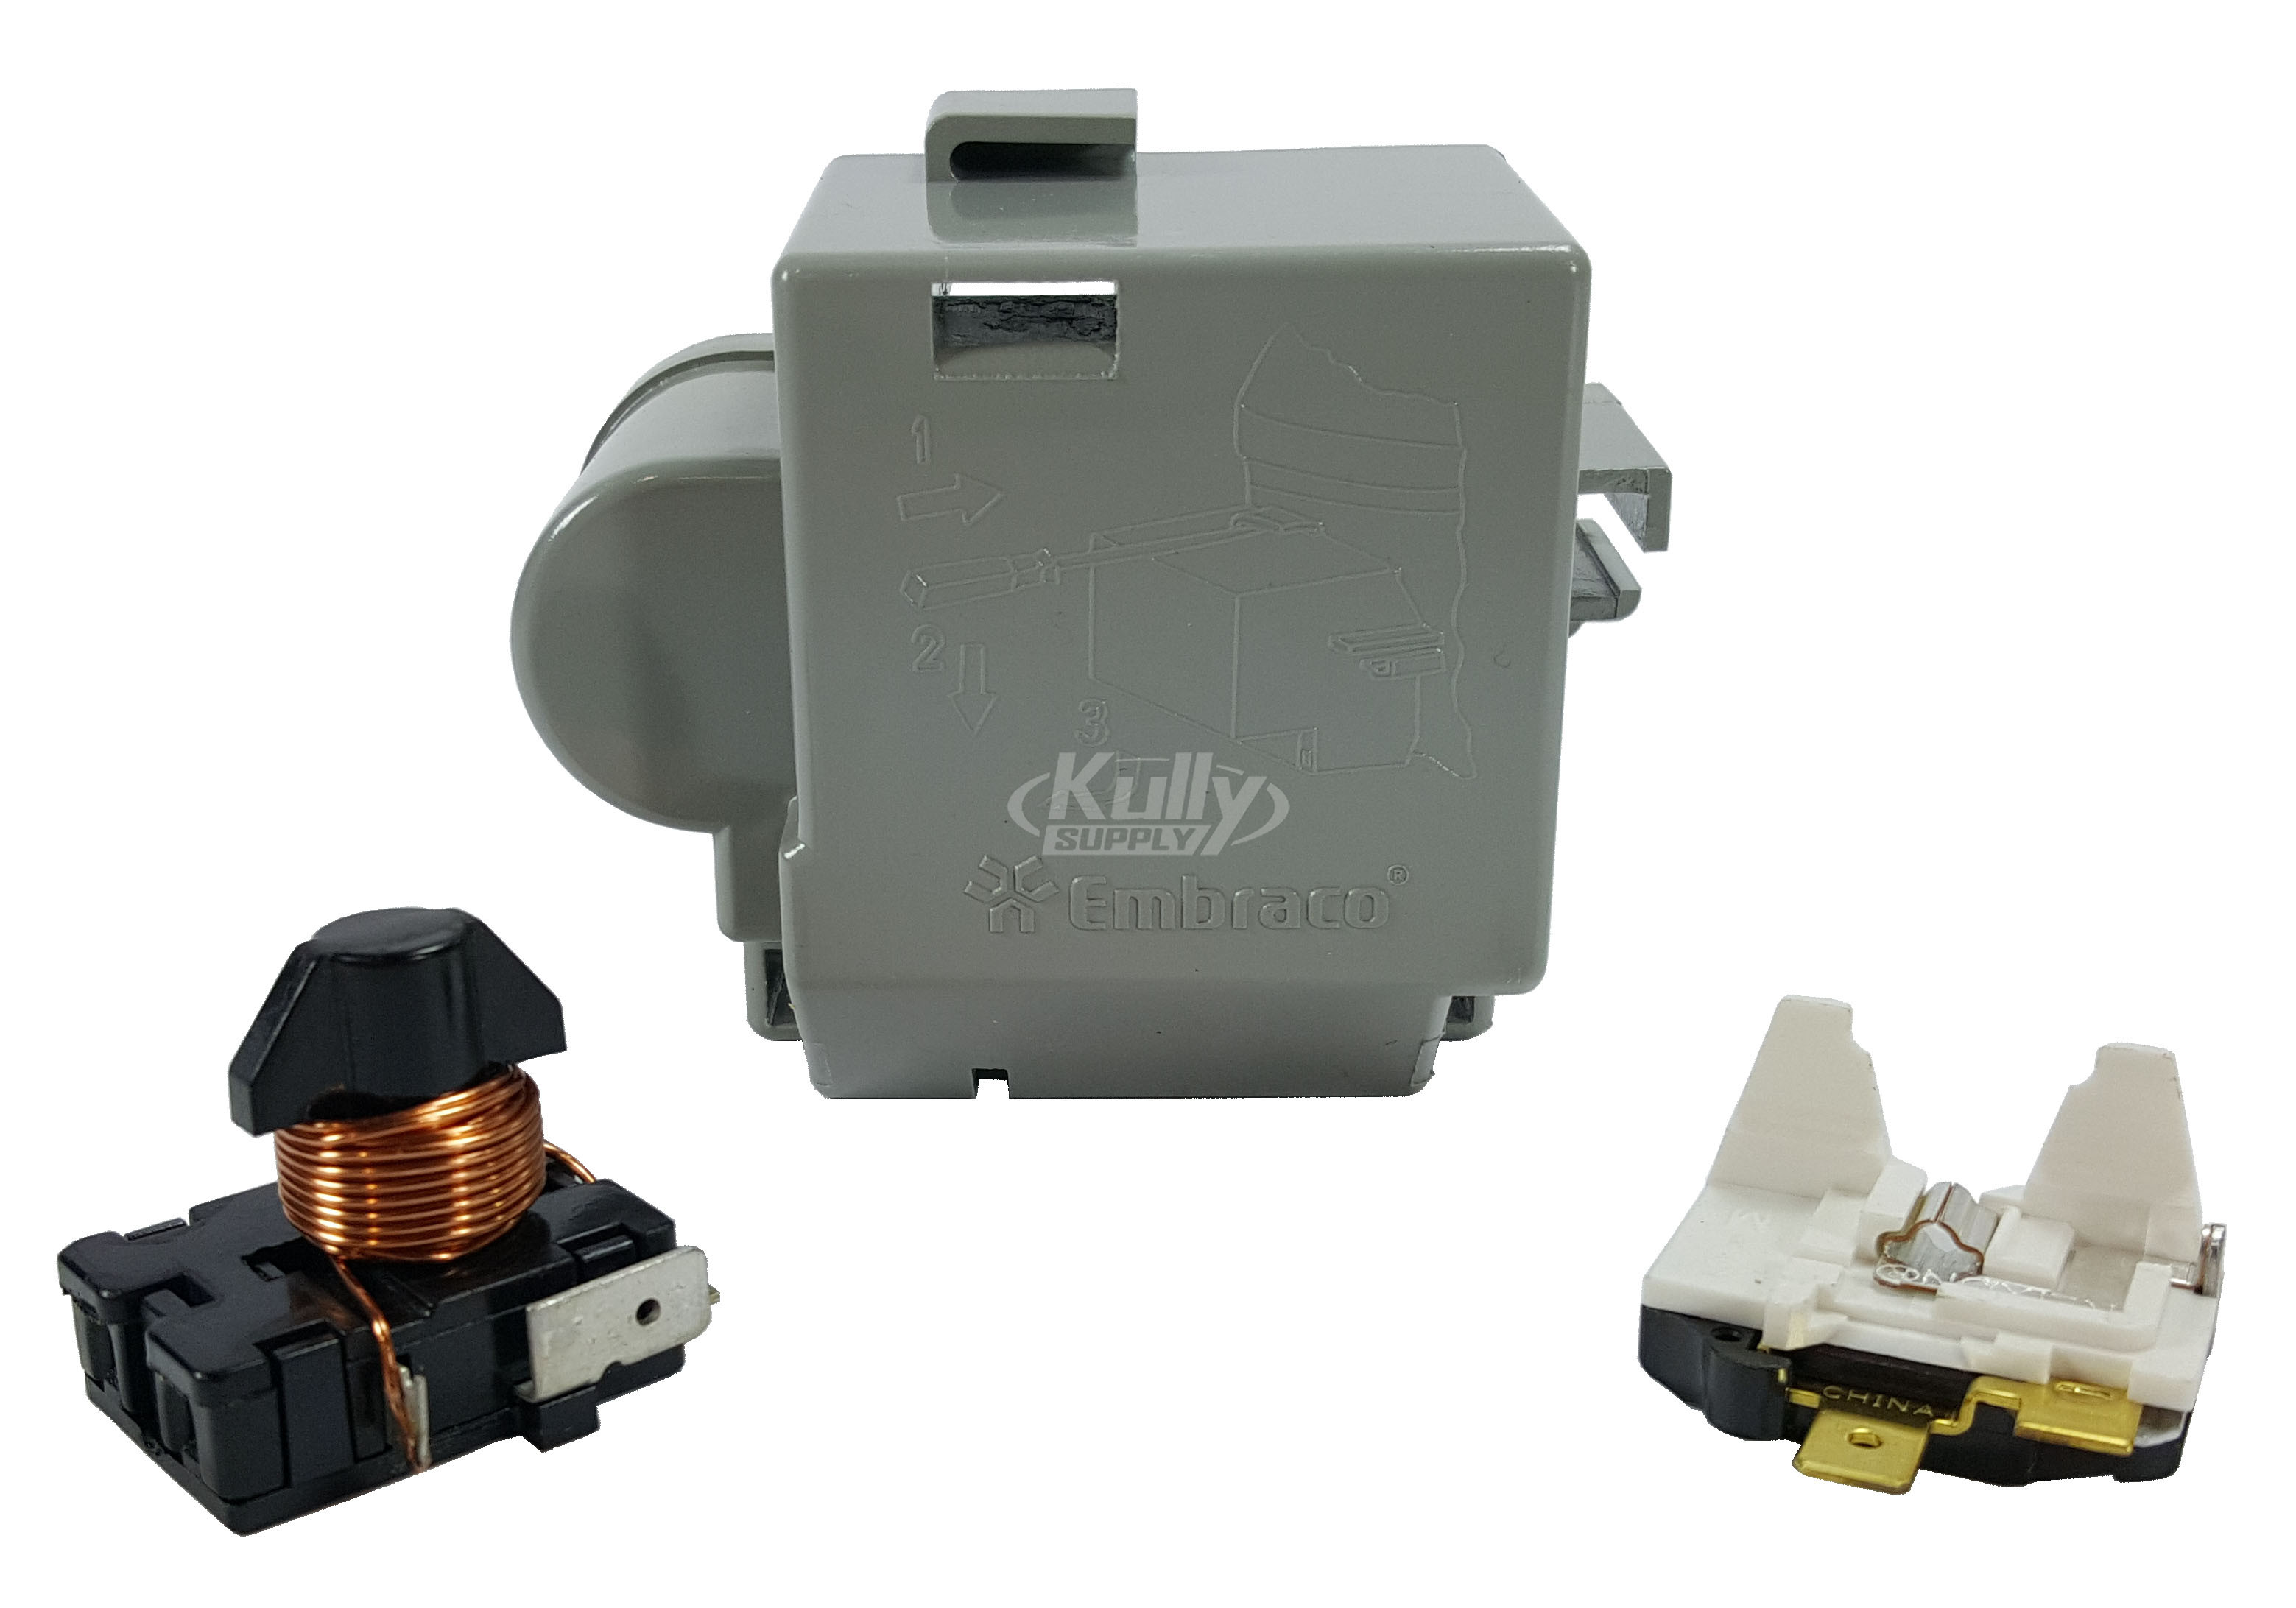 Elkay 238 115V Electricals Kit